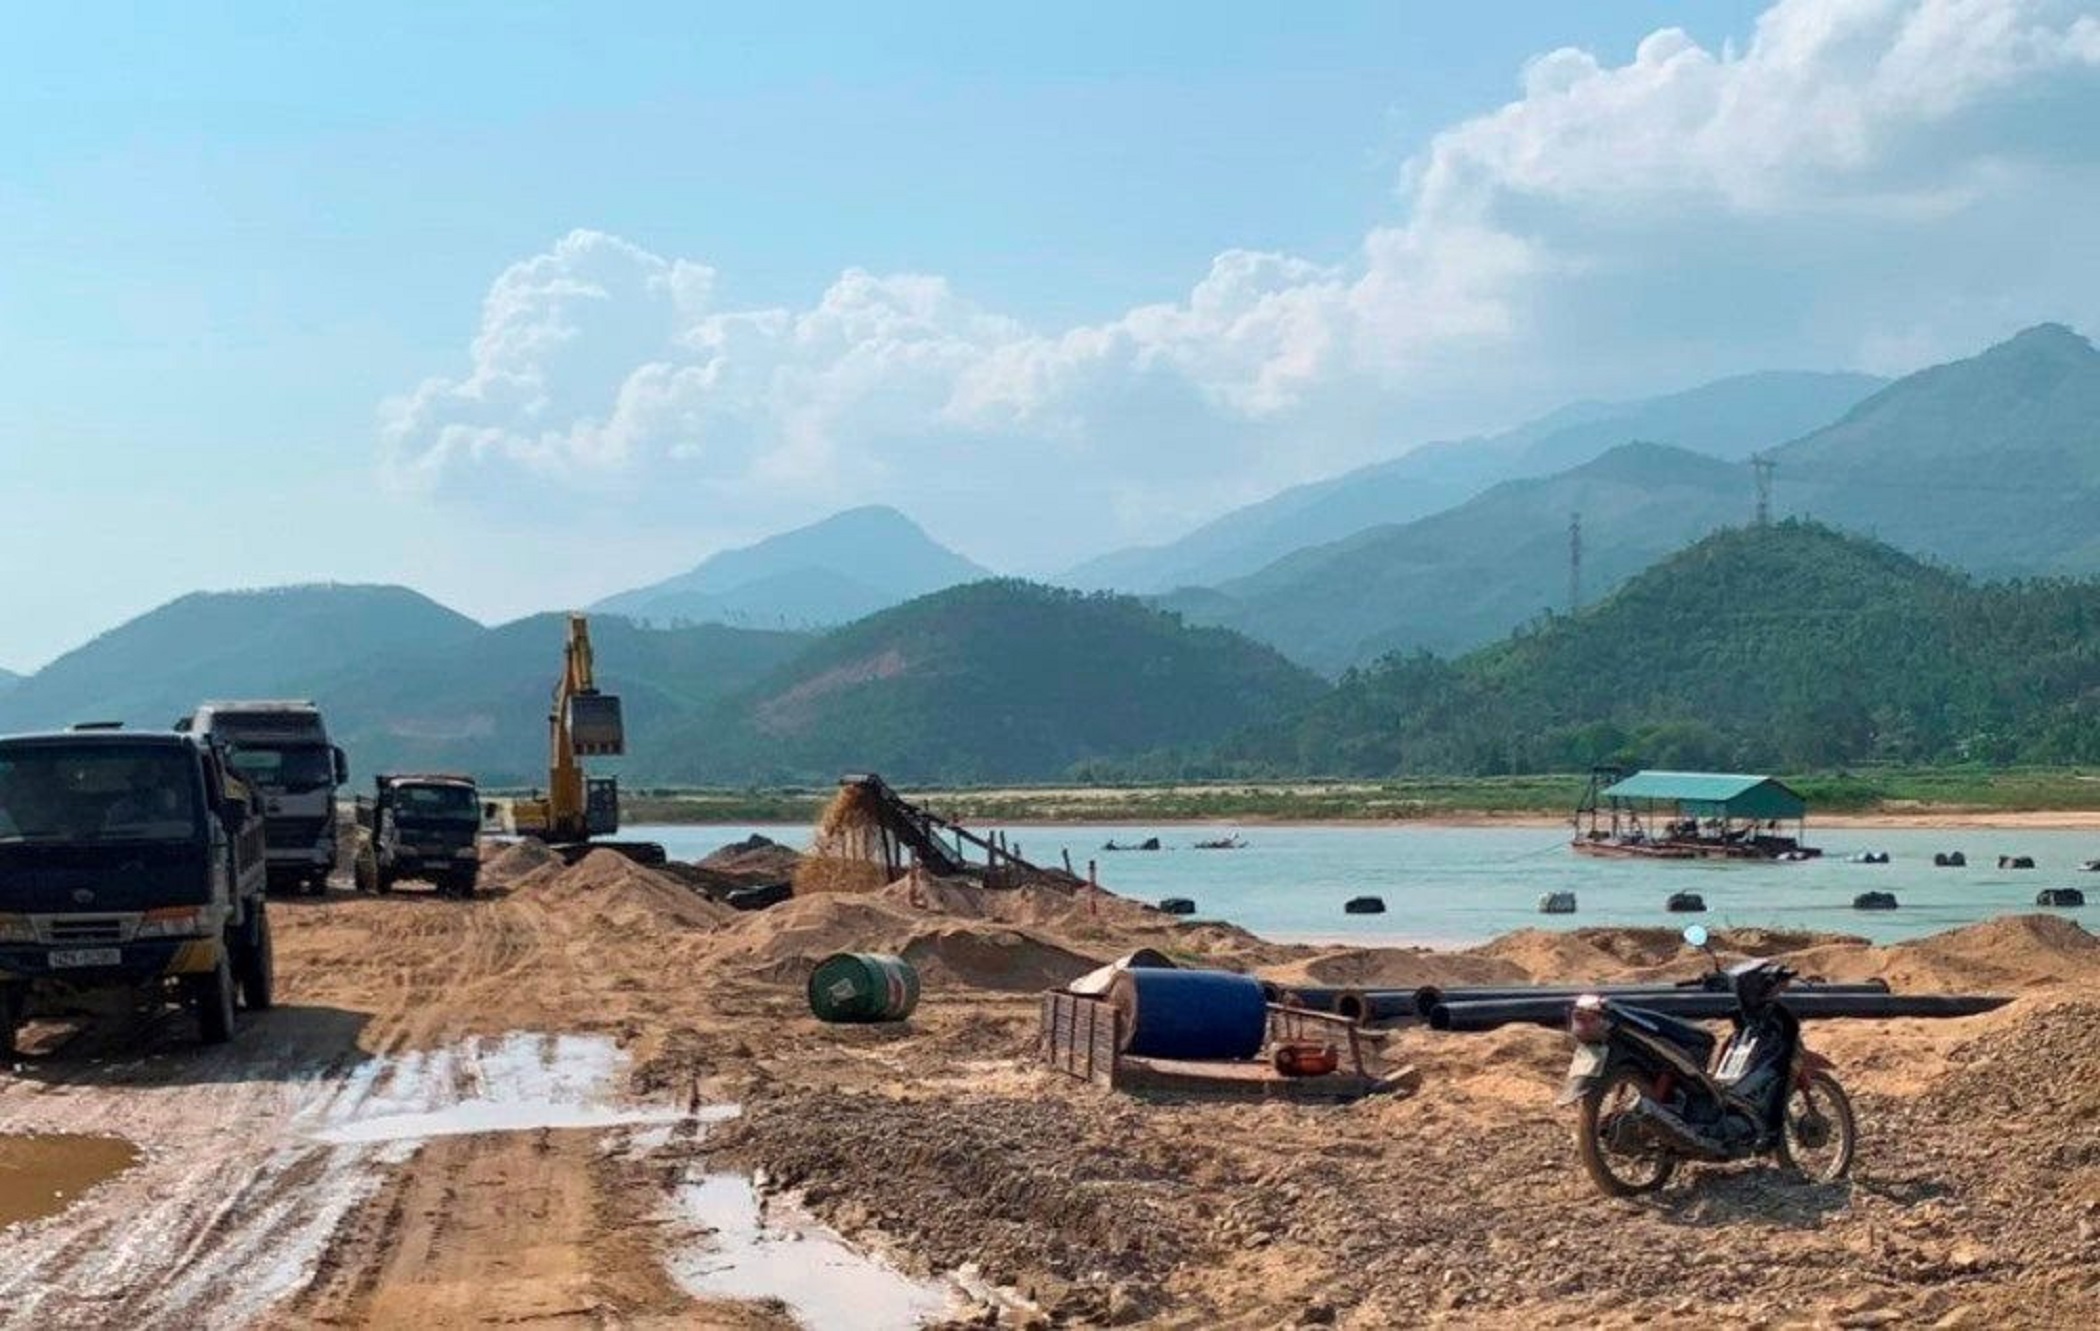 Thiếu hụt nguồn cát xây dựng tại Quảng Nam -  Đà Nẵng  Bài 1: Thiếu hụt cát xây dựng, giá tăng chóng mặt